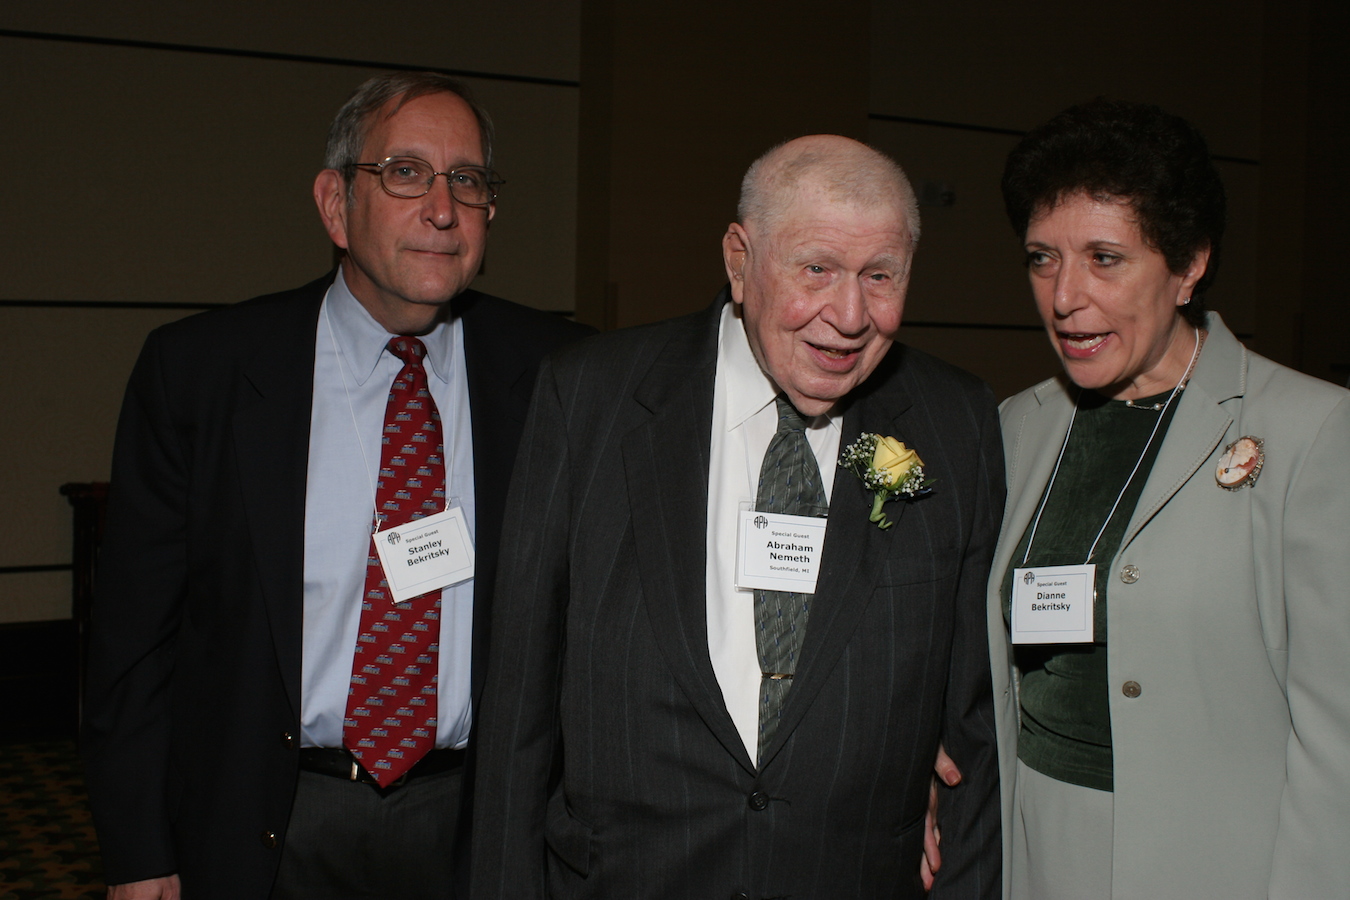 Stanley Bekrtisky, Abraham Nemeth, and Dianne Bekritsky